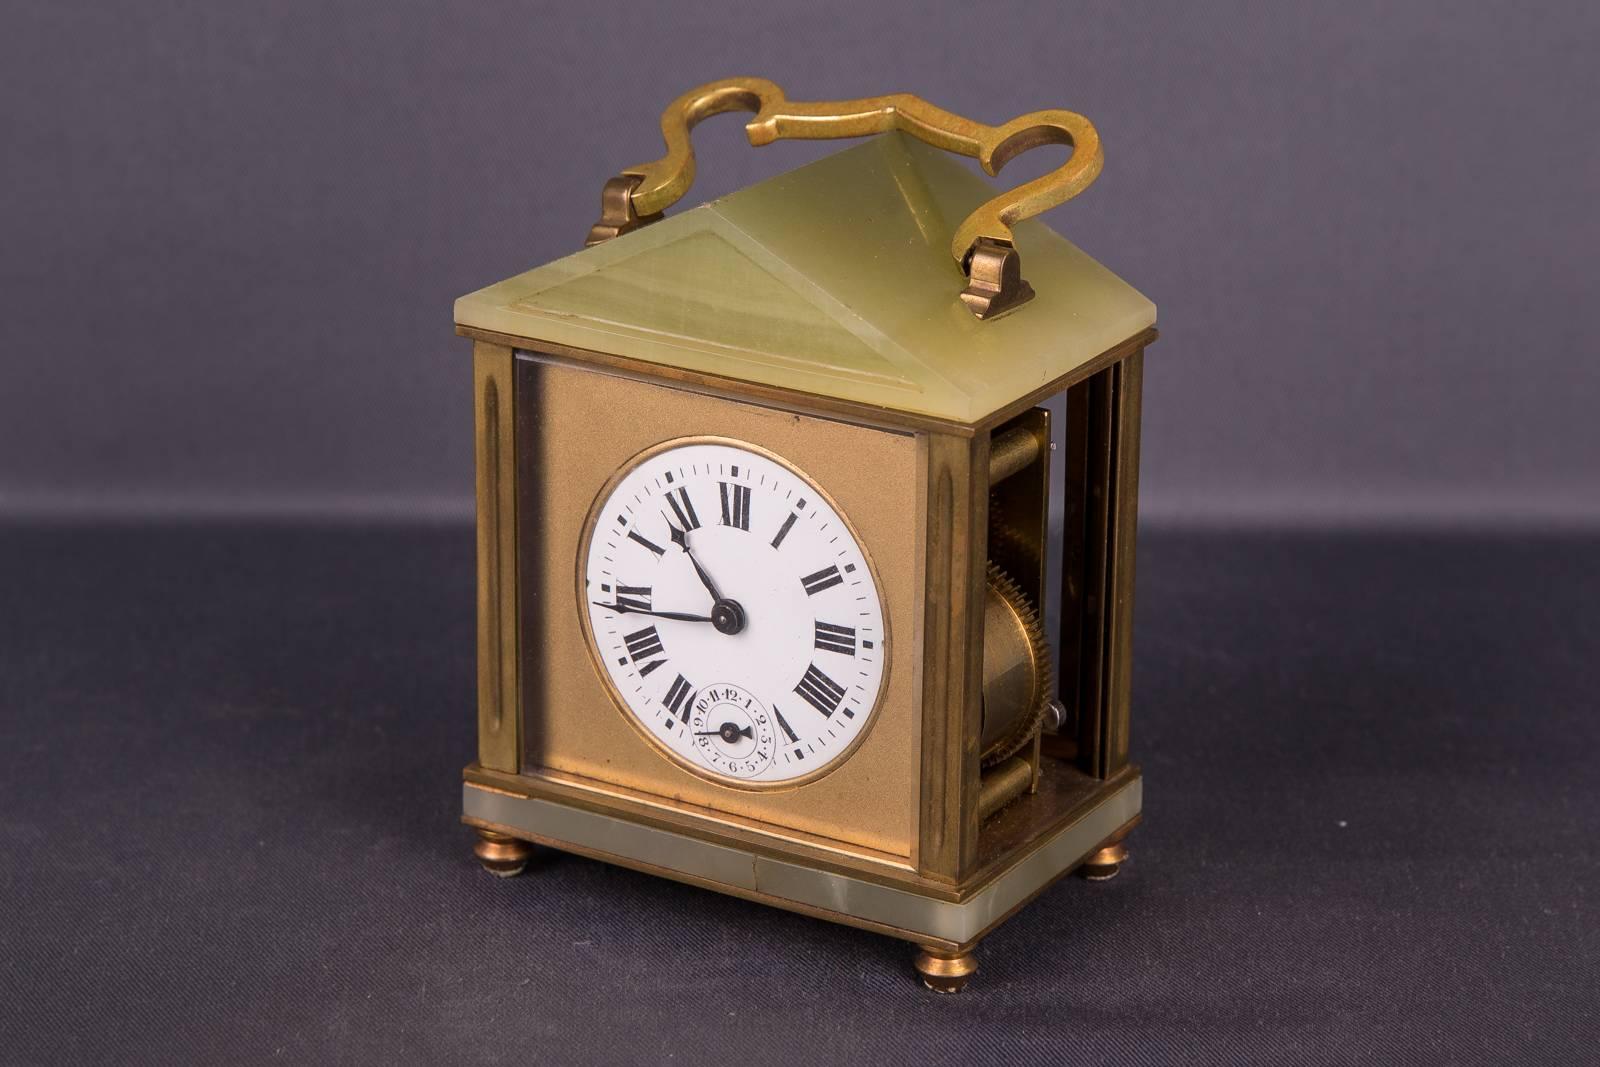 Alte französische Reiseuhr mit Onyx-Applikationen. Quadratisches Dach. Auf der Uhr befindet sich ein gebogener Griff. Uhrengehäuse auf vier kugelförmigen Füßen. Linke Scheibe fehlt. Das Uhrwerk sollte überprüft werden.

(R-45).